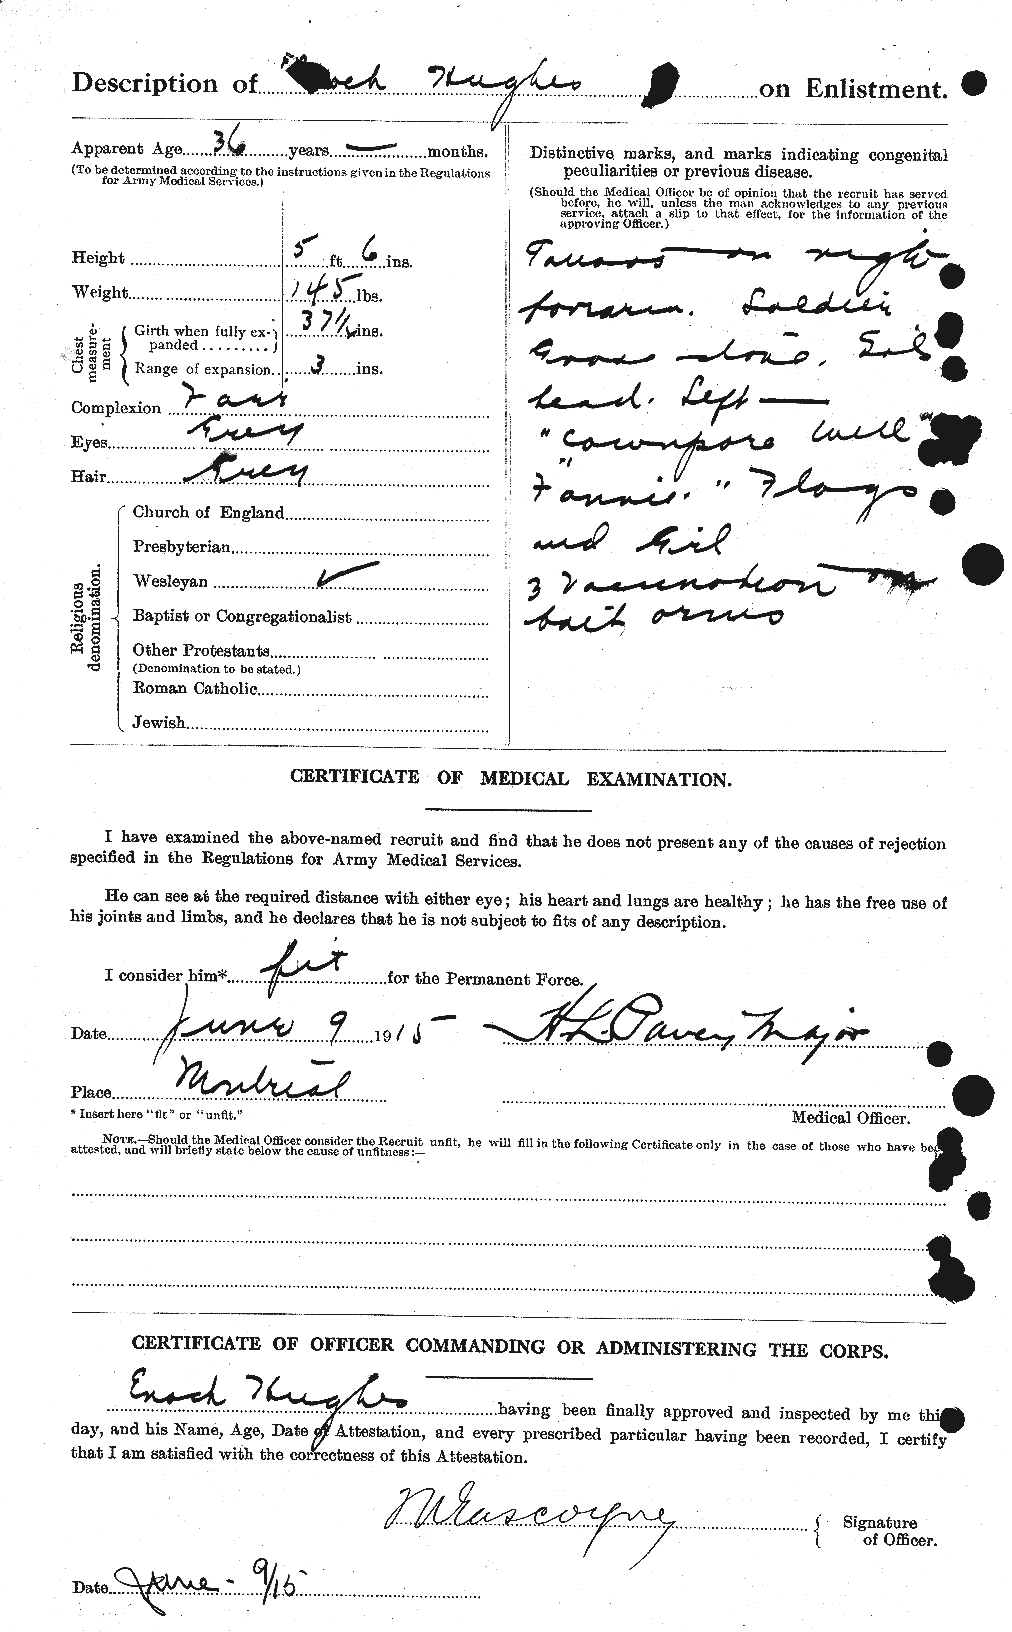 Dossiers du Personnel de la Première Guerre mondiale - CEC 402707b